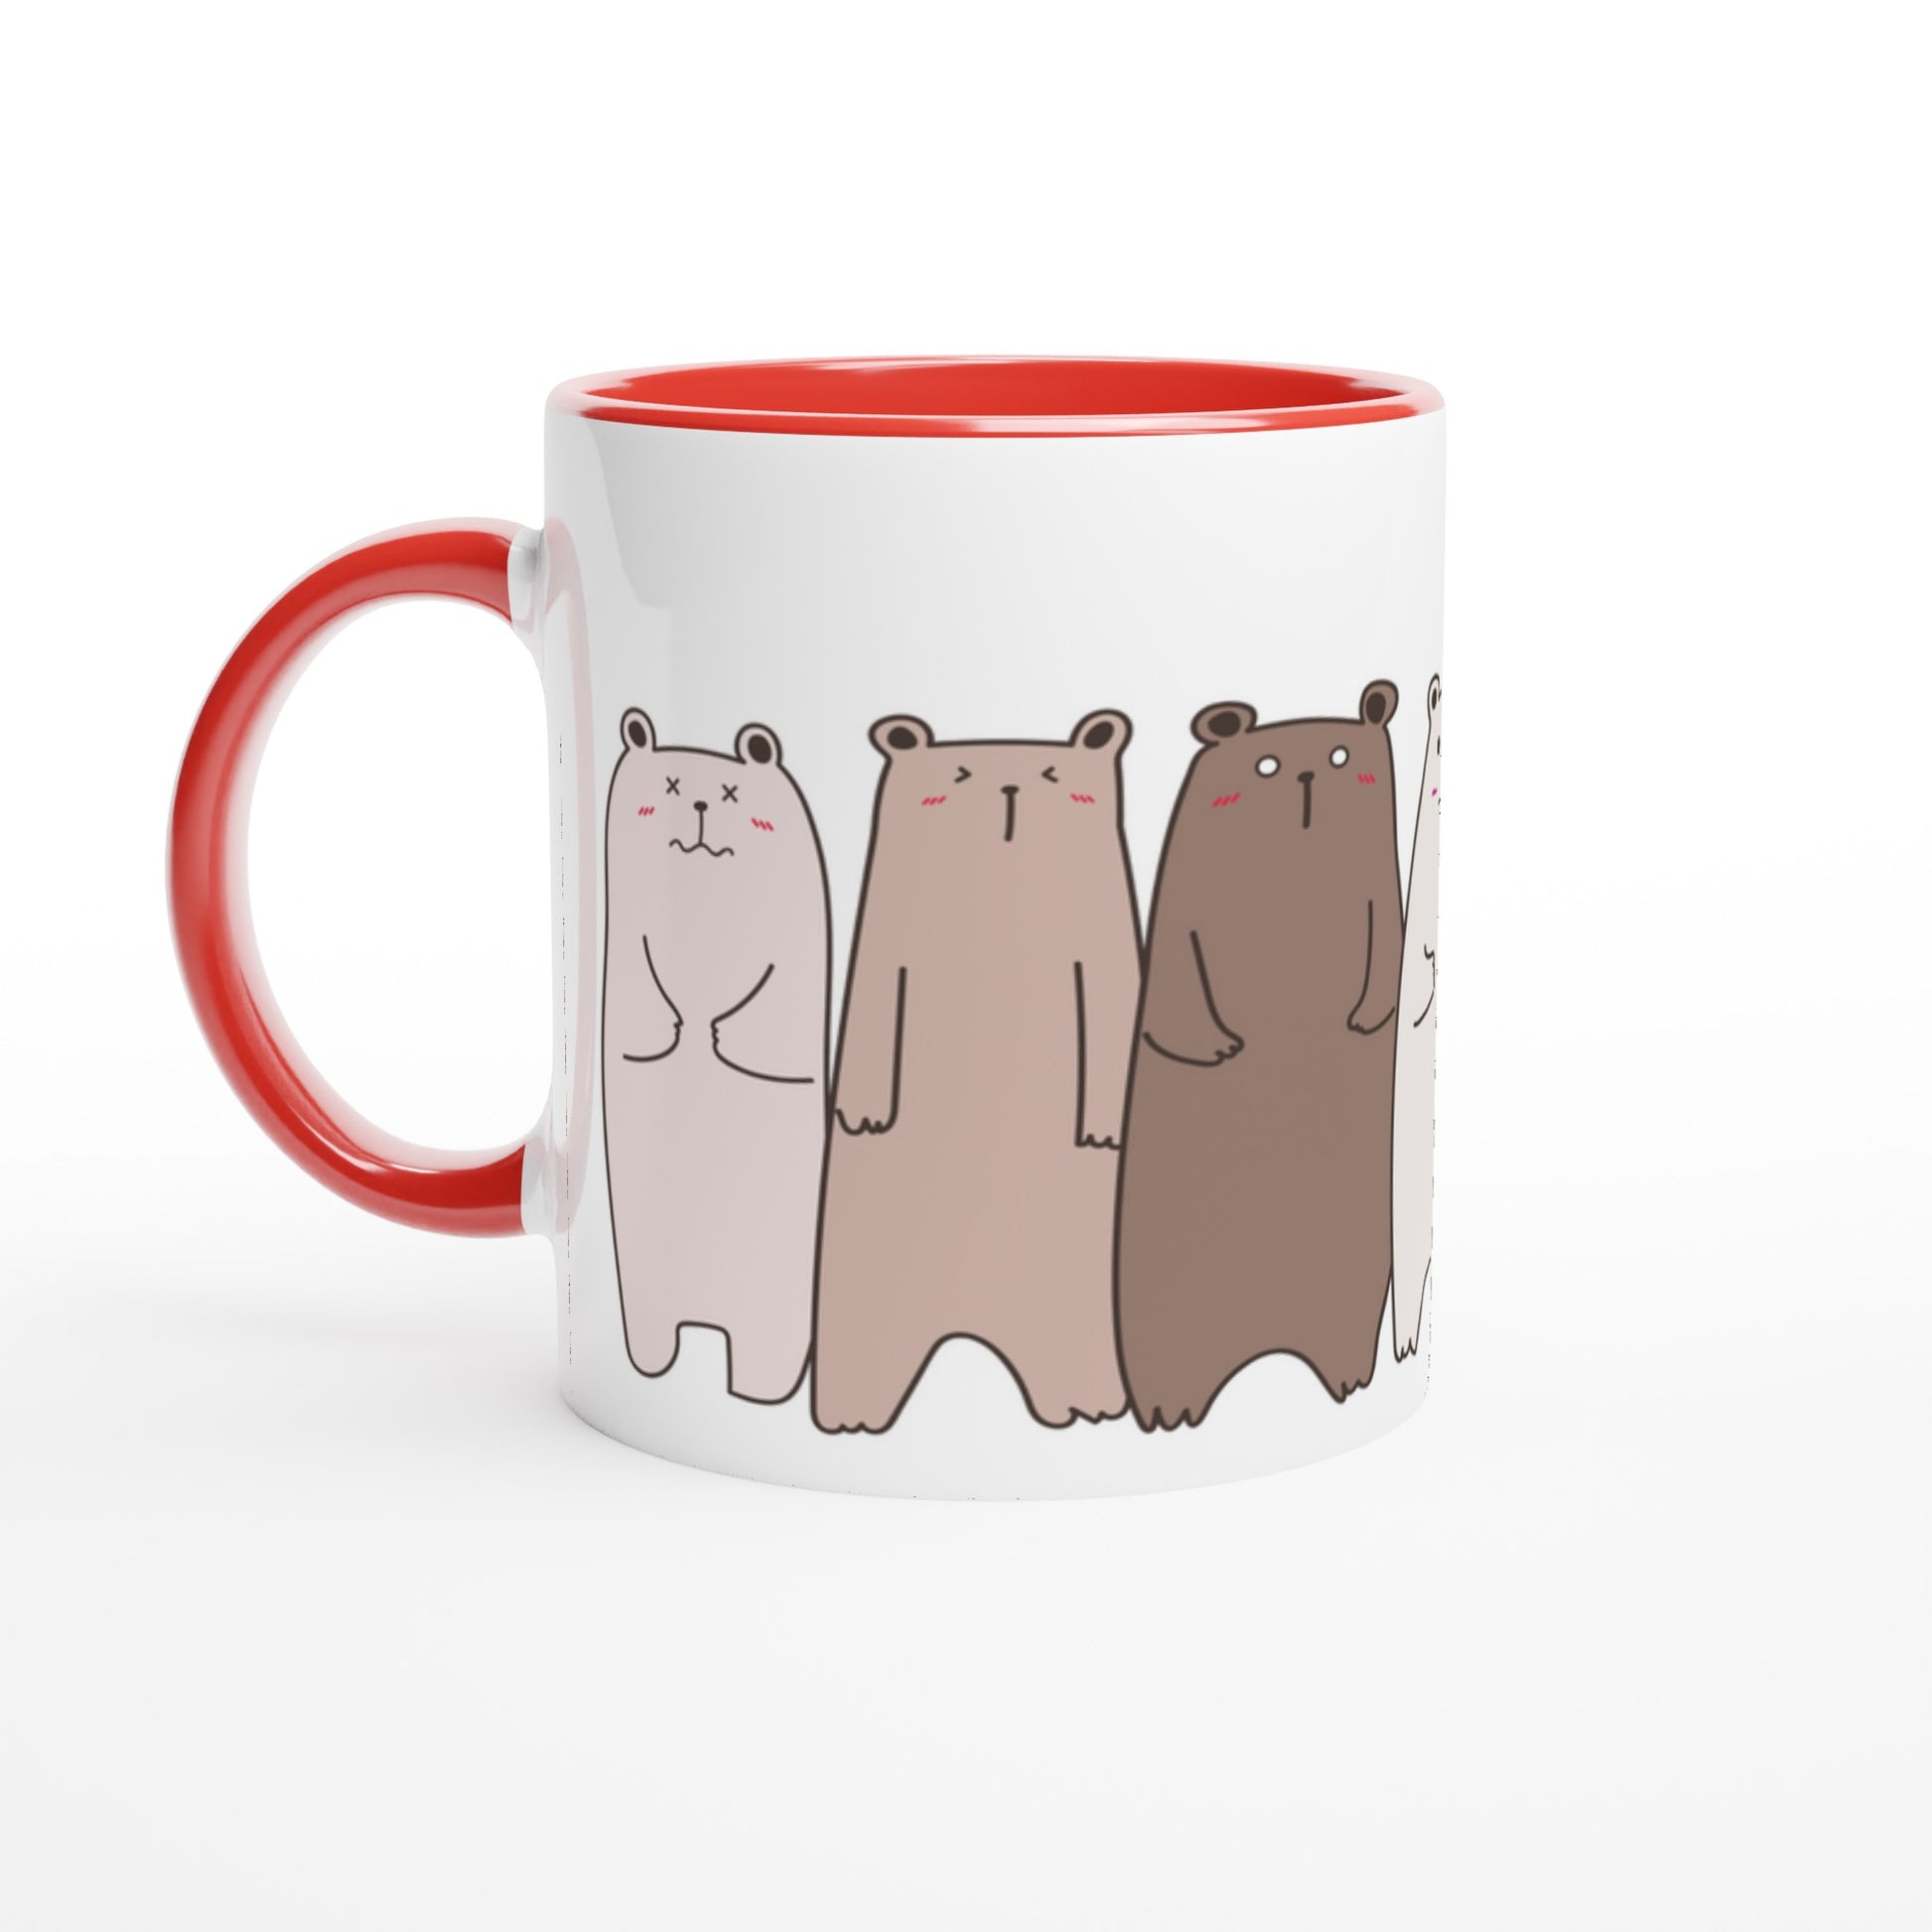 Bears In A Row - White 11oz Ceramic Mug with Colour Inside Ceramic Red Colour 11oz Mug animal